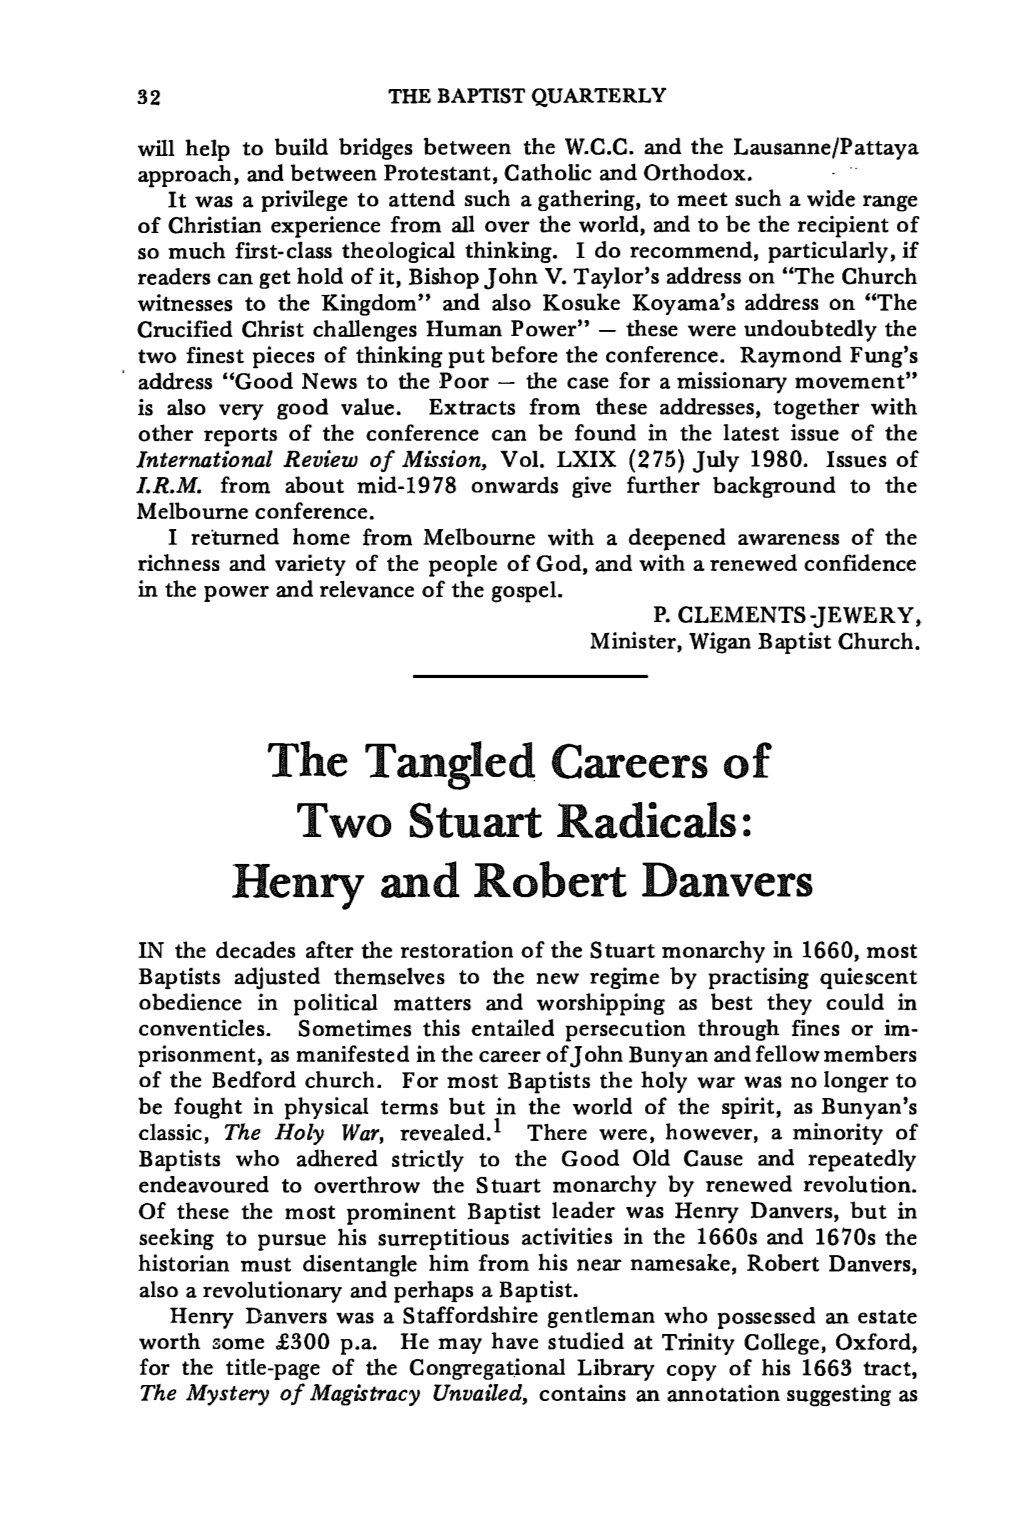 Henry and Robert Danvers